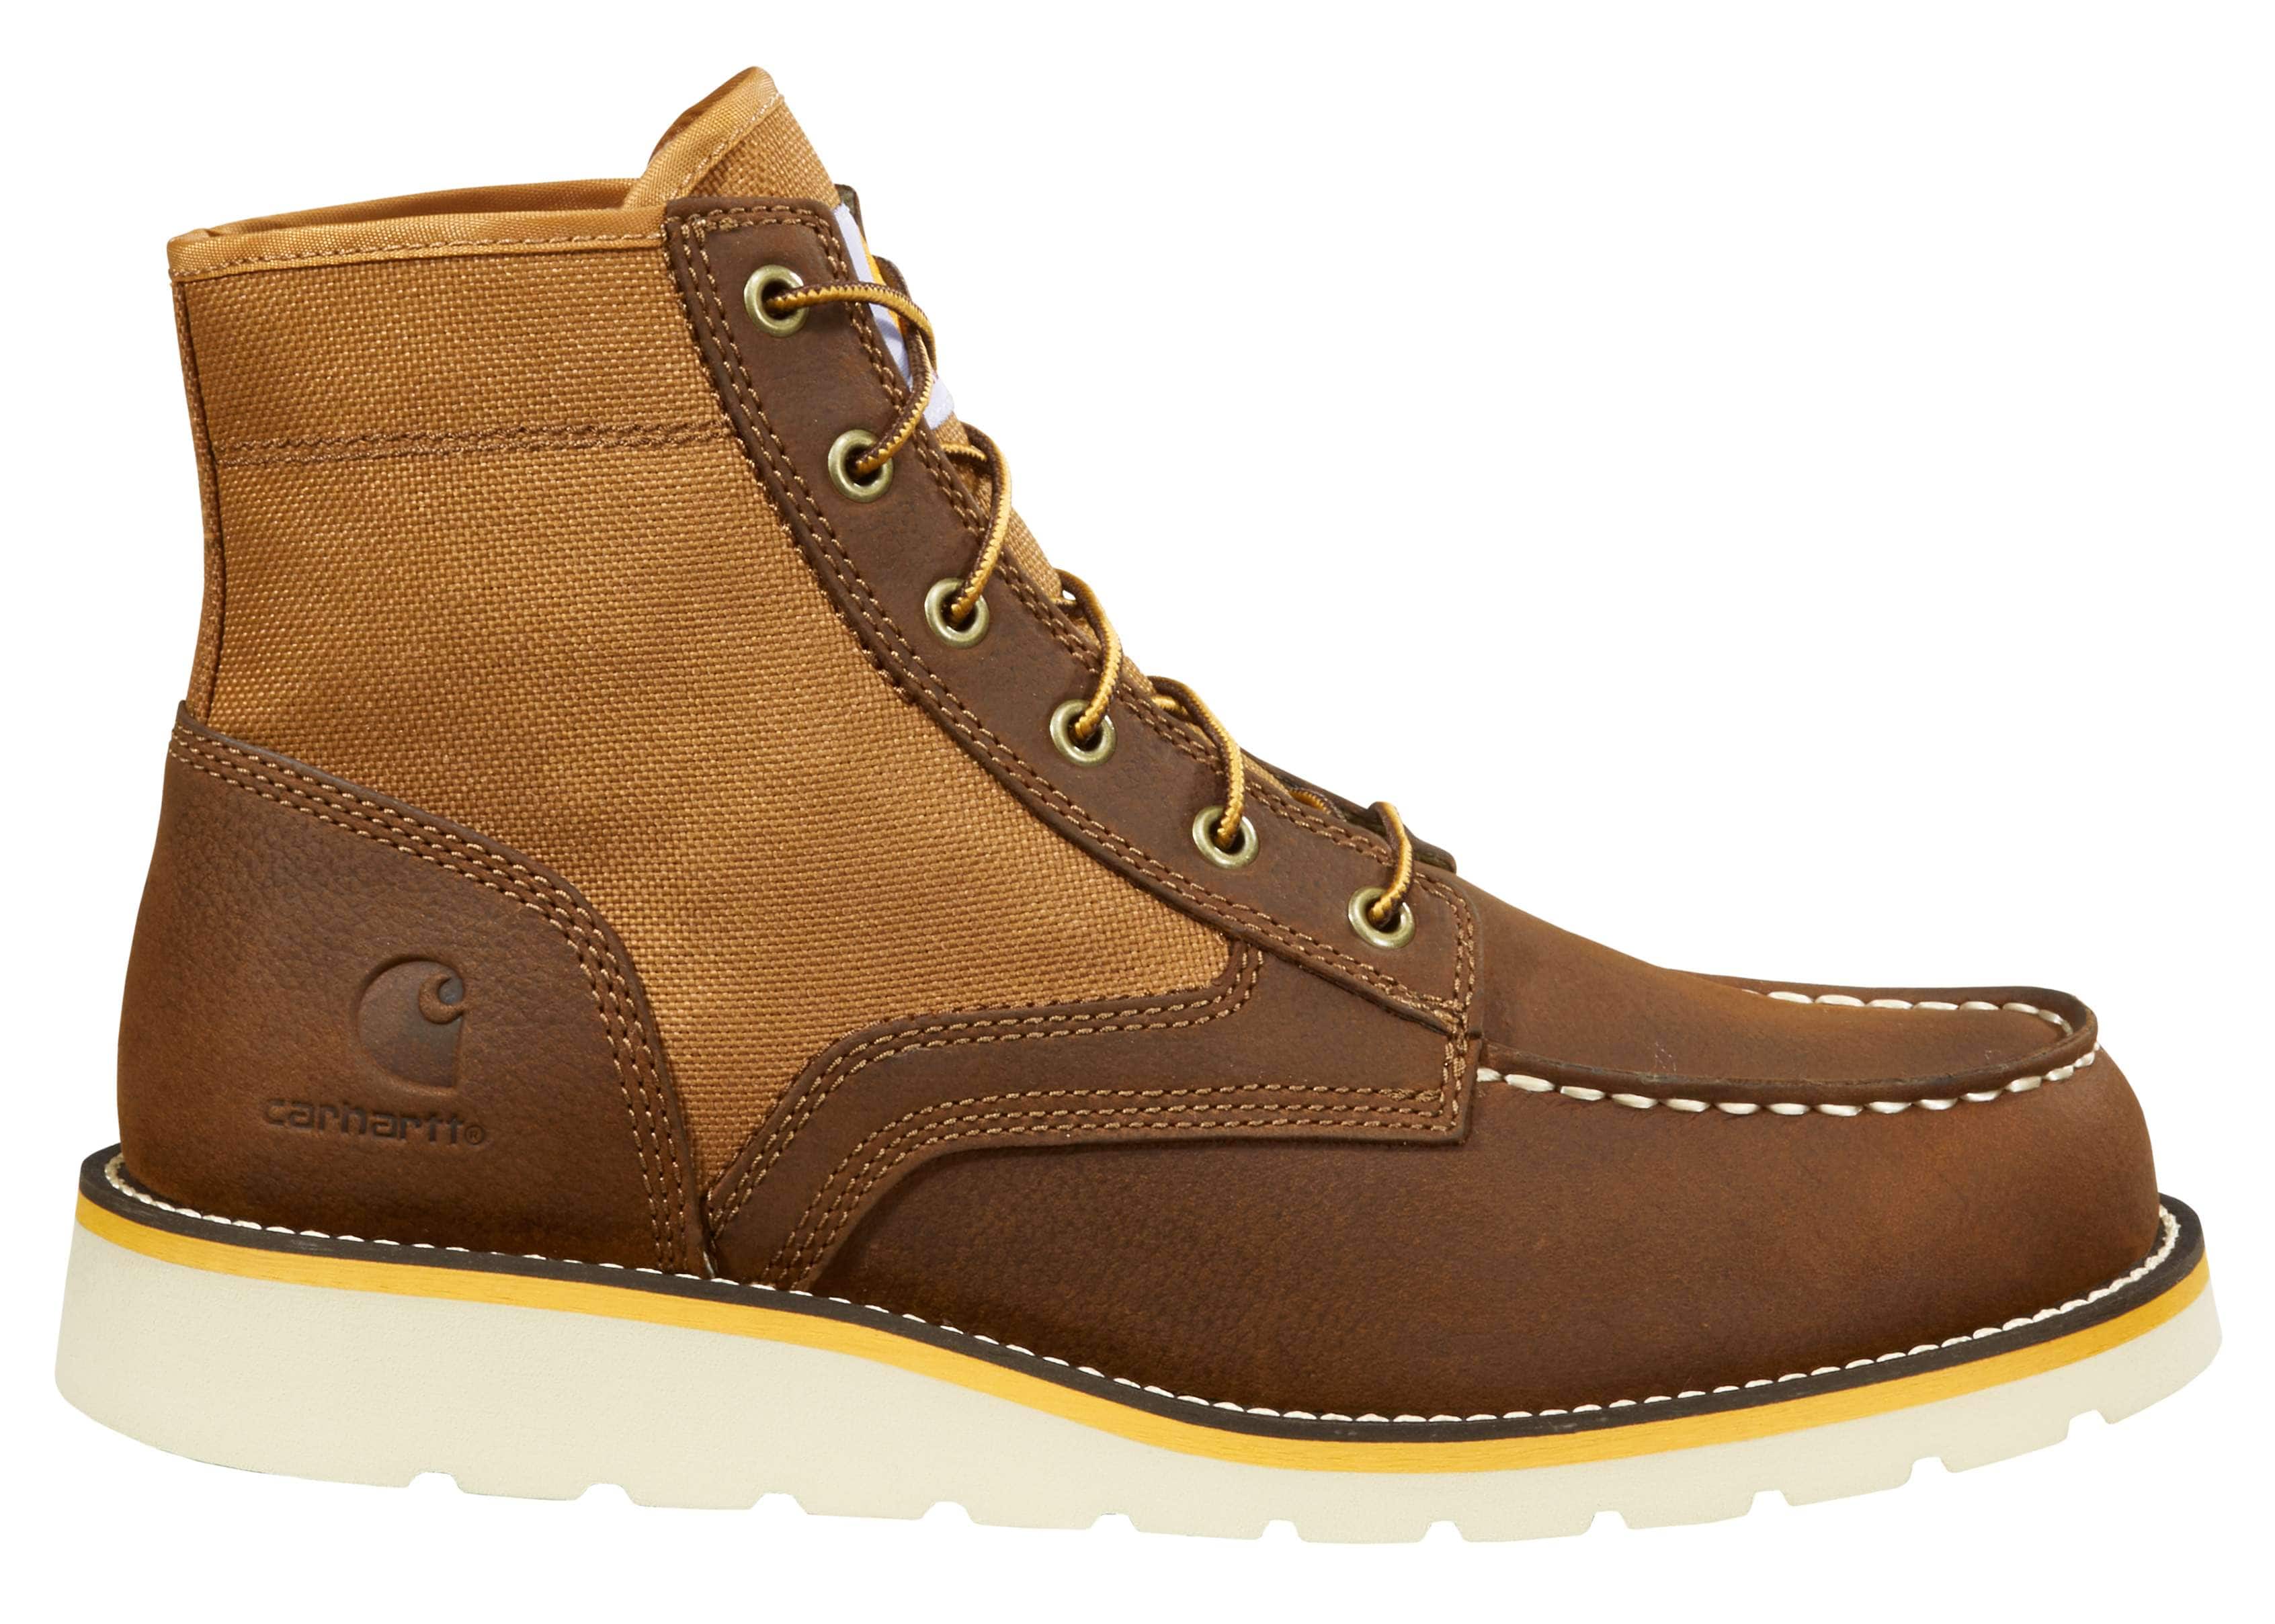 Men's Wedge Boots | Carhartt